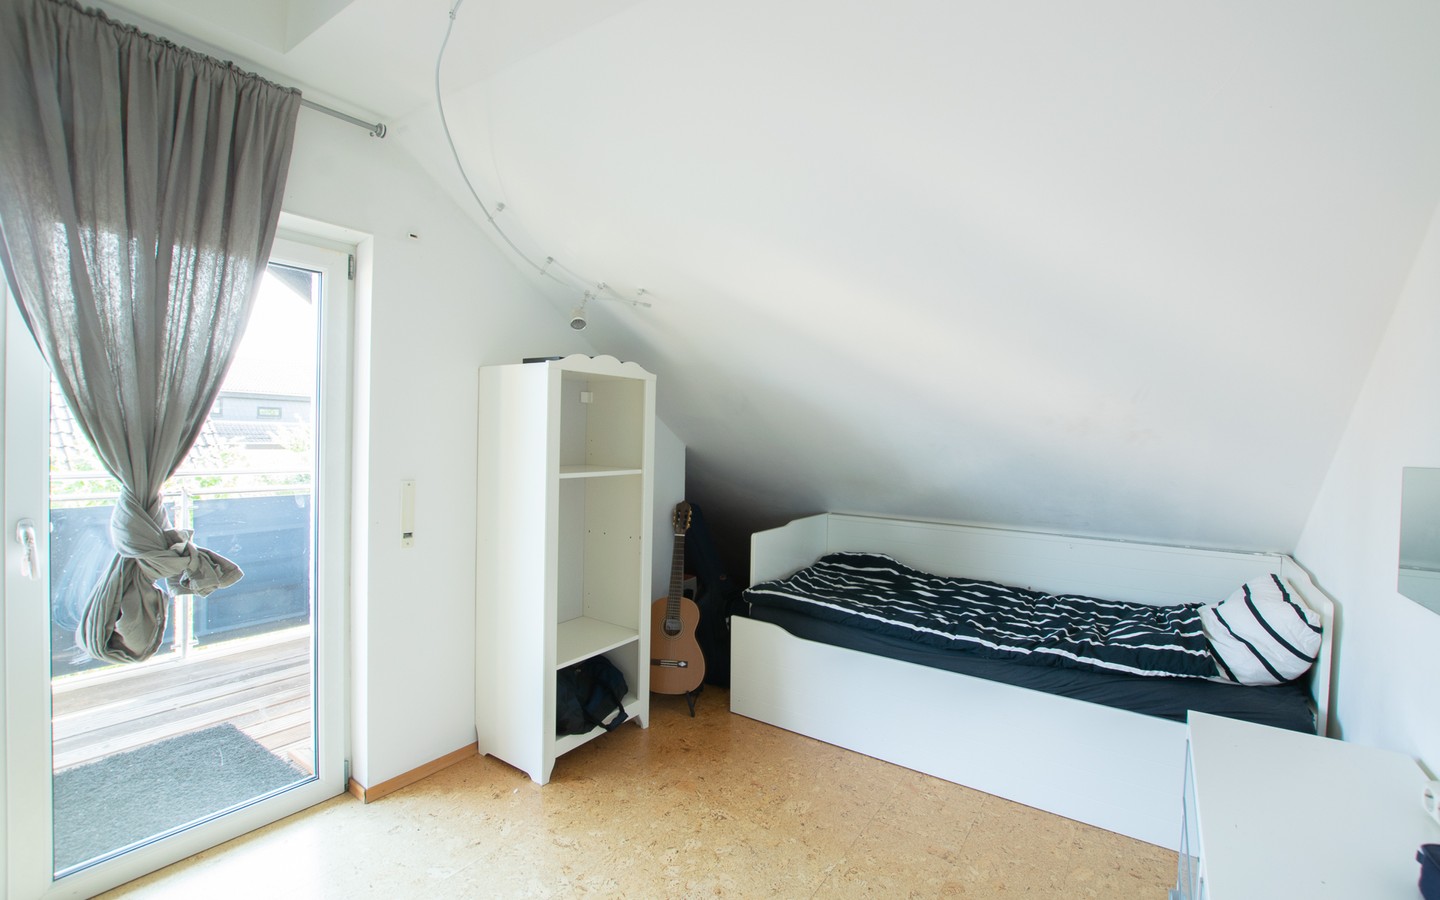 Zimmer OG - Modernes Einfamilienhaus auf großem Grundstück in ruhiger Lage von Lobenfeld +Virtuelle 3D-Tour+